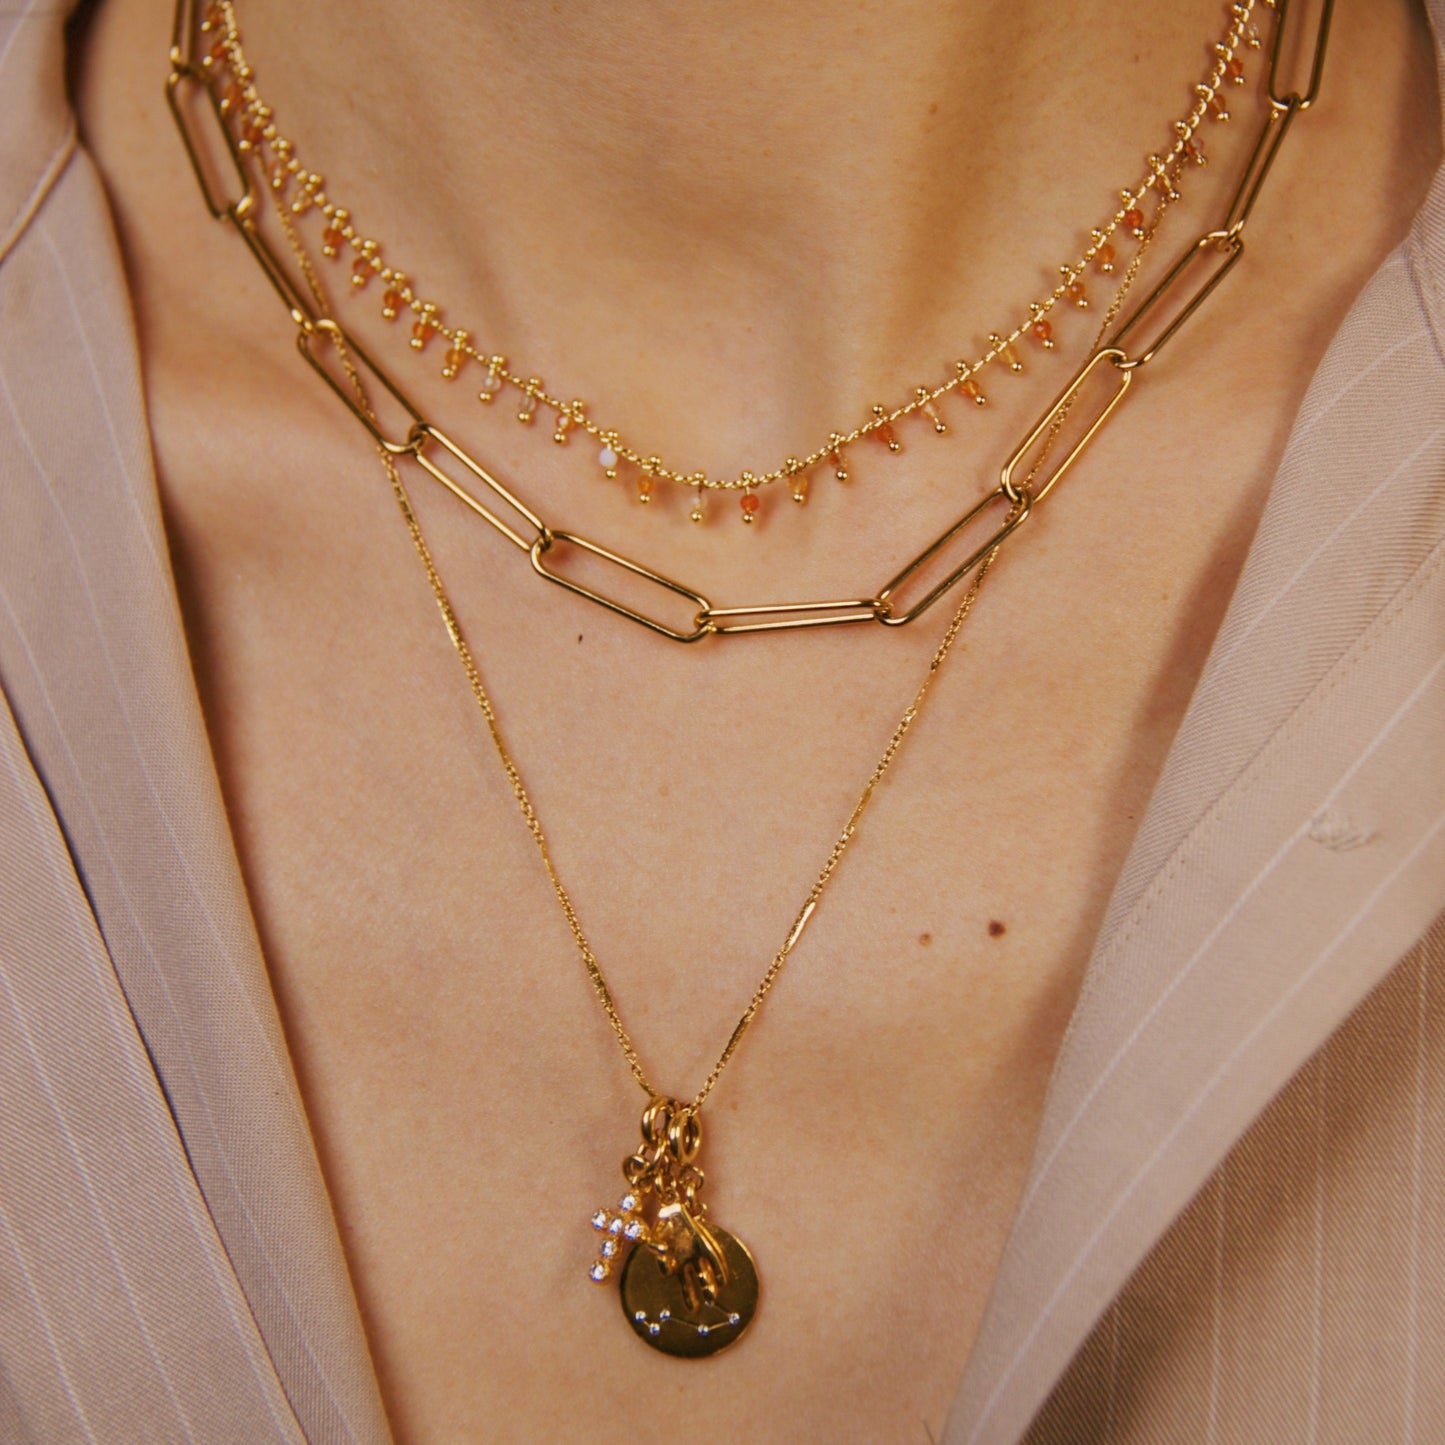 Carlotta necklace short version